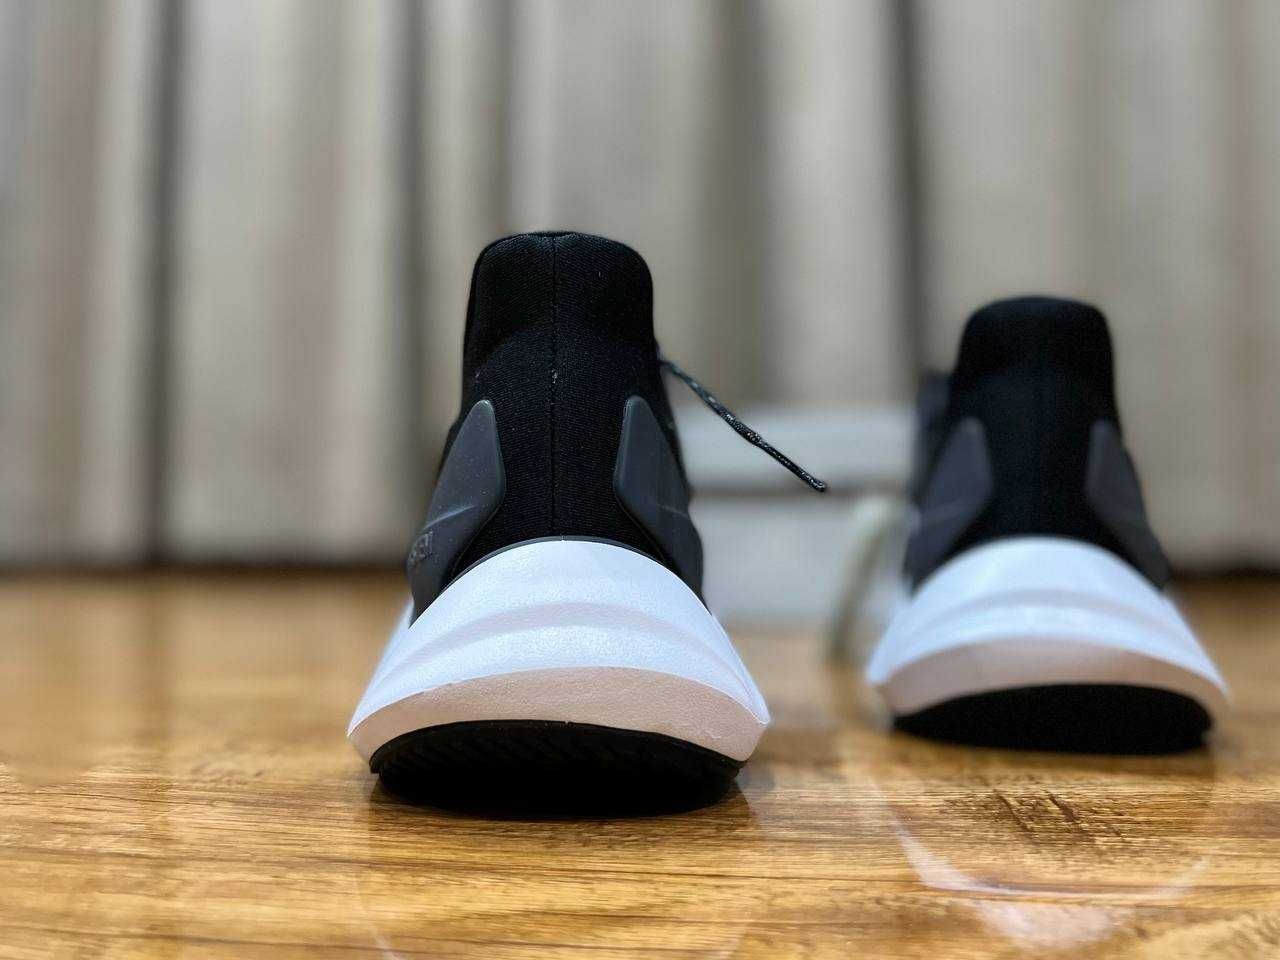 Adidas ALPHATORSION 2.0 беговые кроссовки